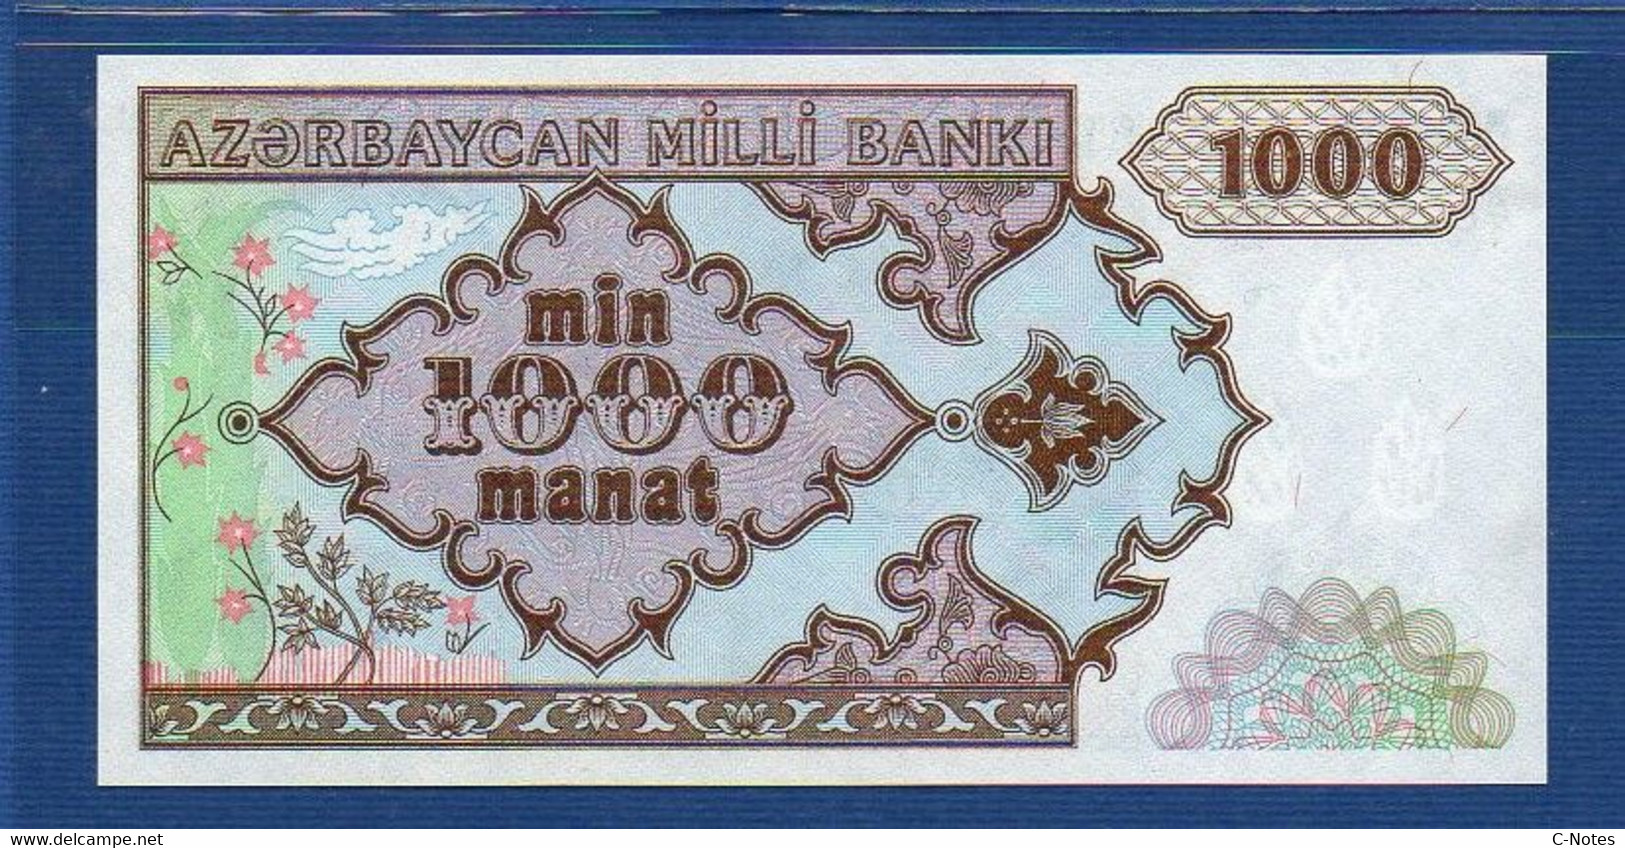 AZERBAIJAN - P.20a - 1000 1.000 MANAT ND (1993) UNC, Serie A/1 64303831 - Azerbaigian